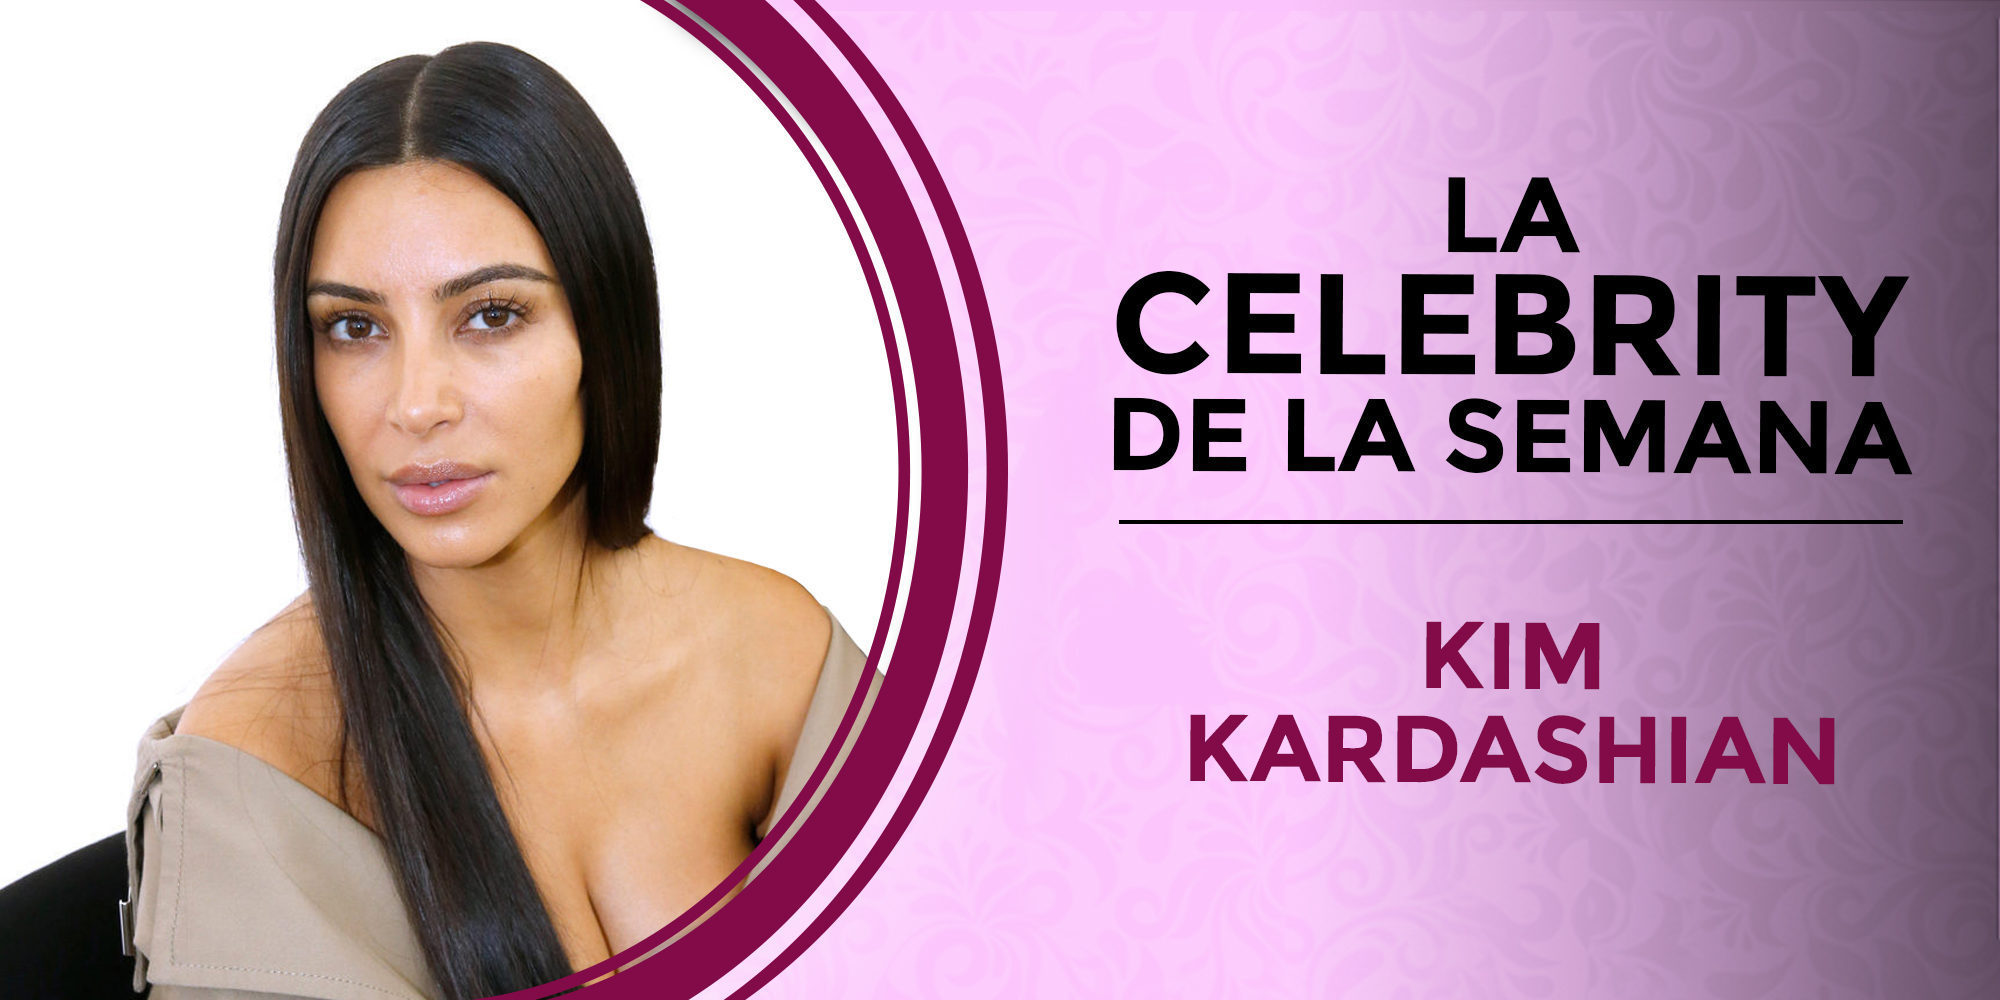 Kim Kardashian se convierte en la celebrity de la semana por el robo de París y sus consecuencias